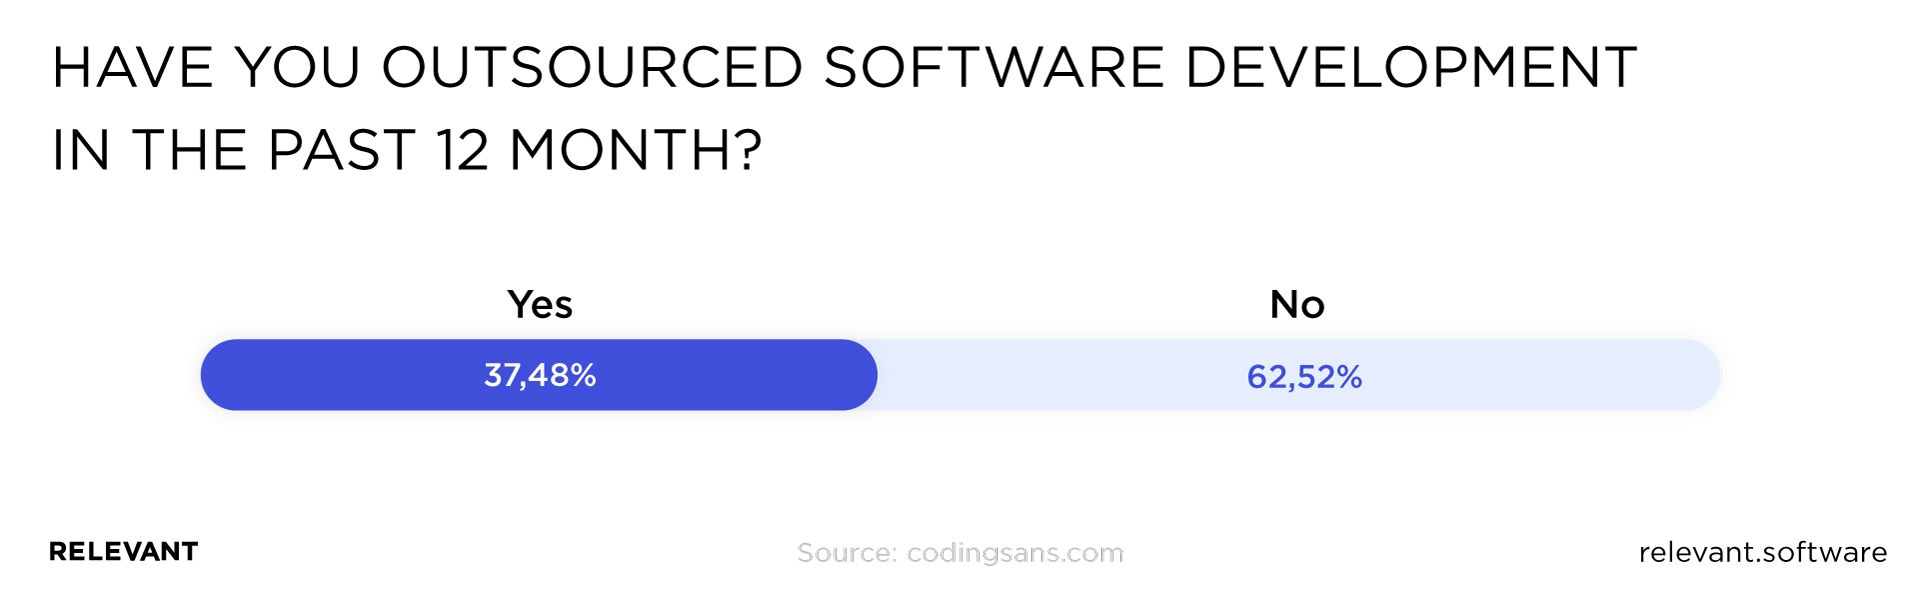 关于过去 12 个月外包软件开发的民意调查